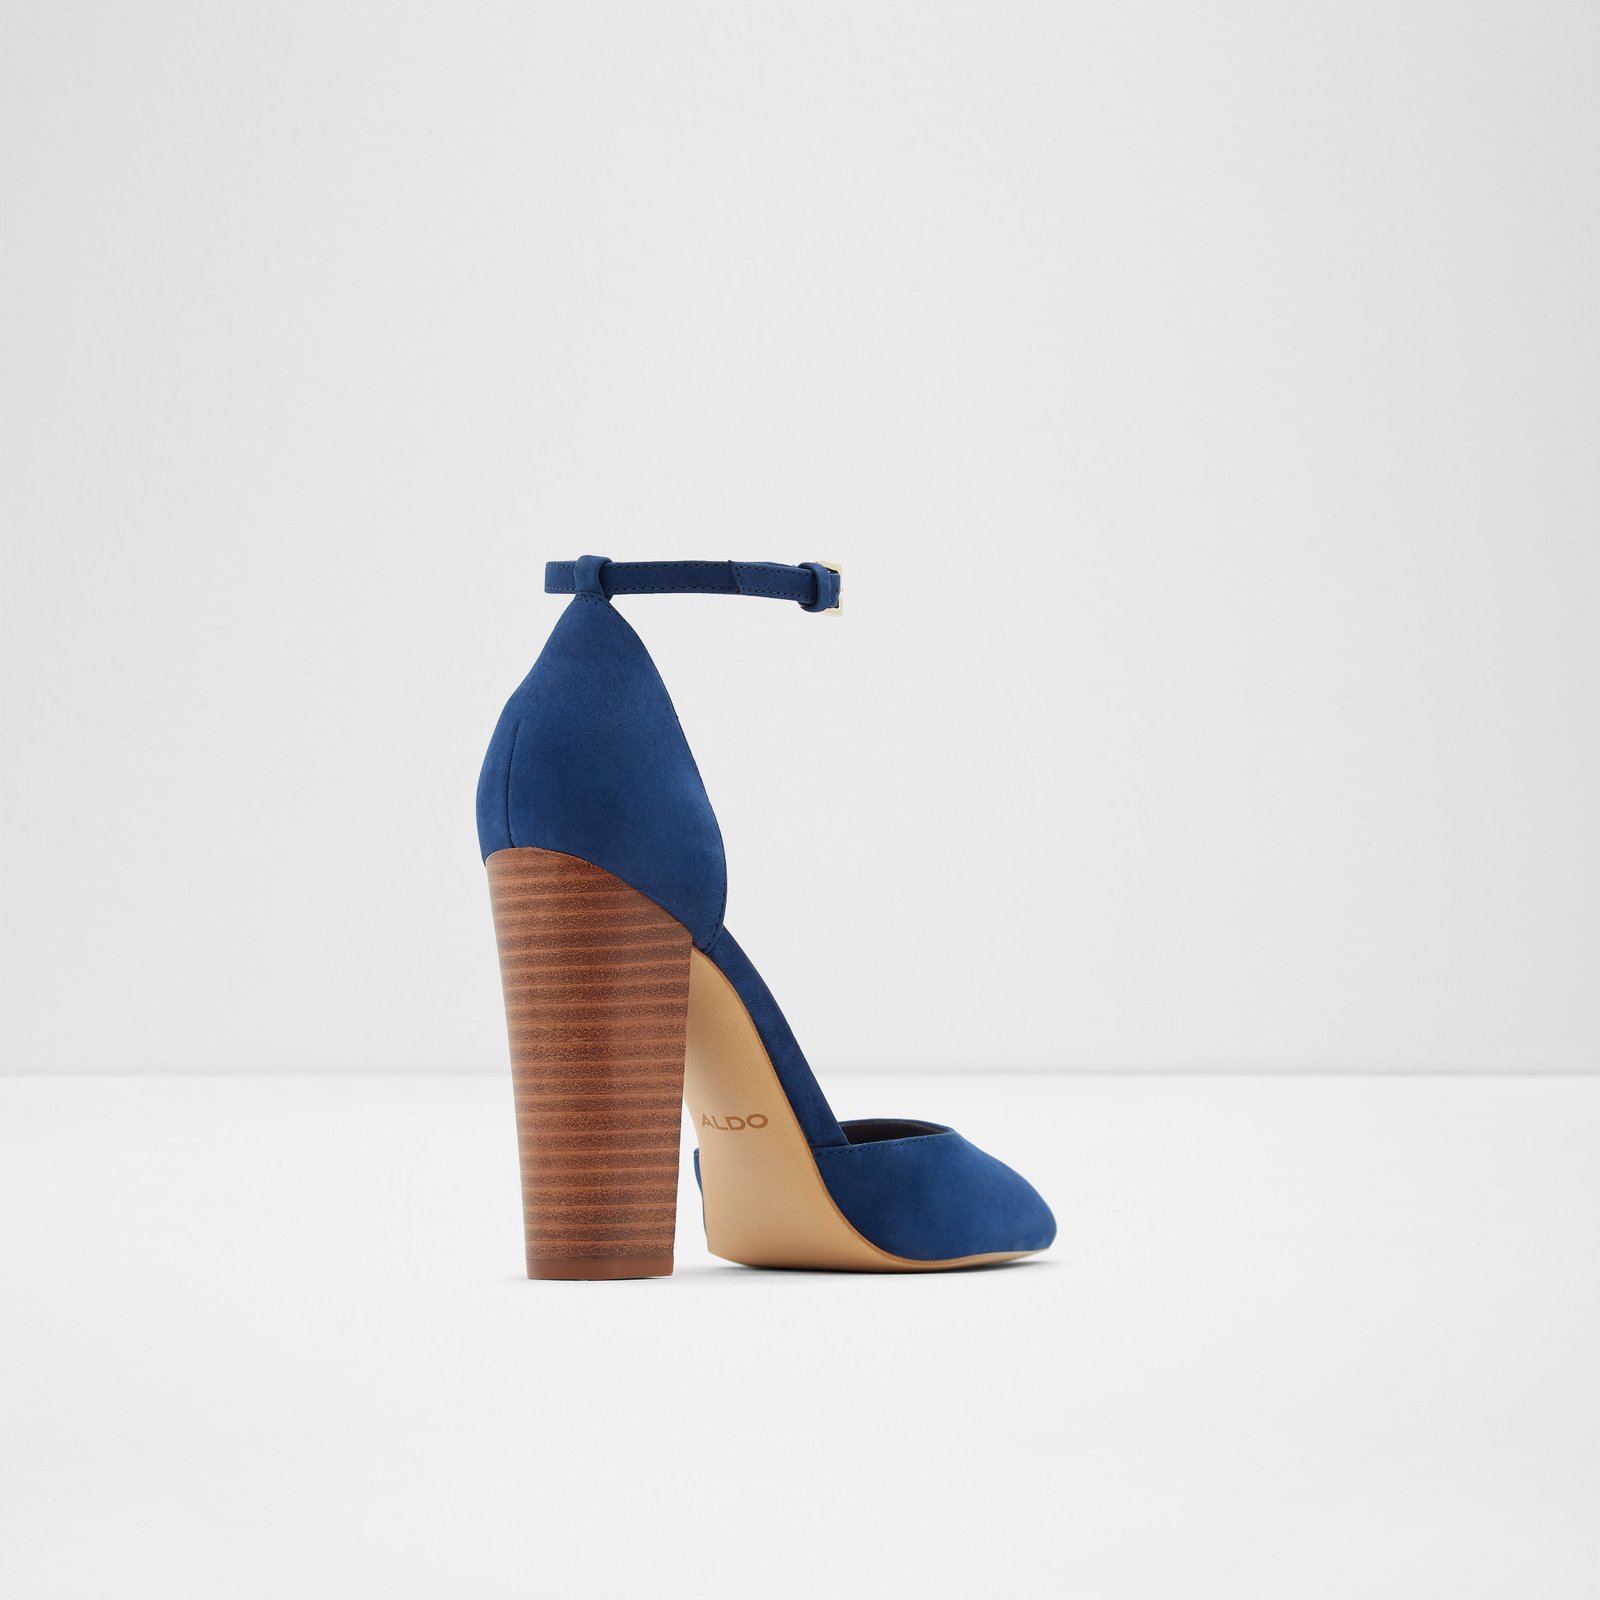 aldo navy blue heels